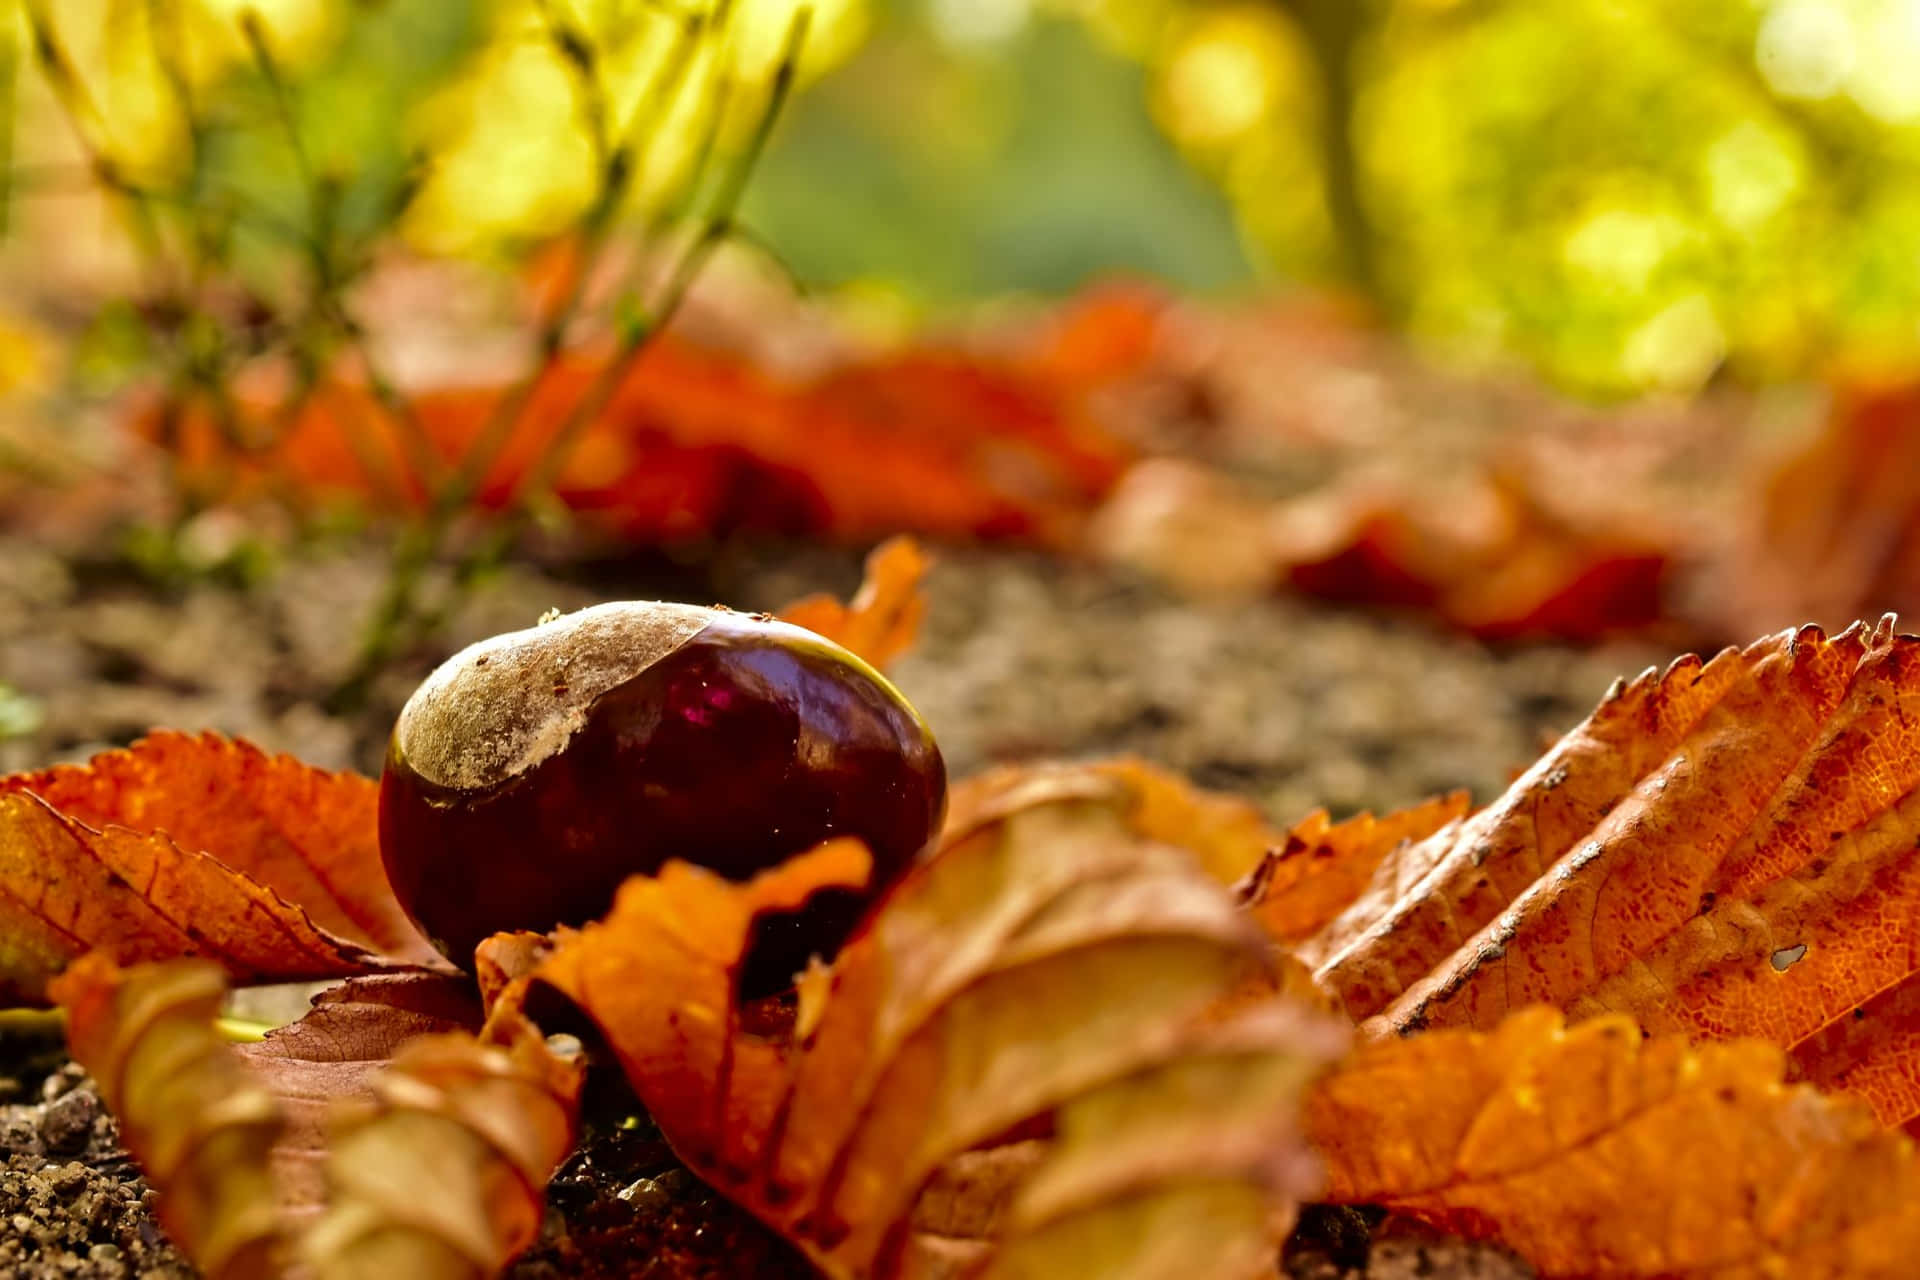 Catturala Bellezza Della Stagione Autunnale Con Questo Stupefacente Paesaggio Naturale D'autunno.